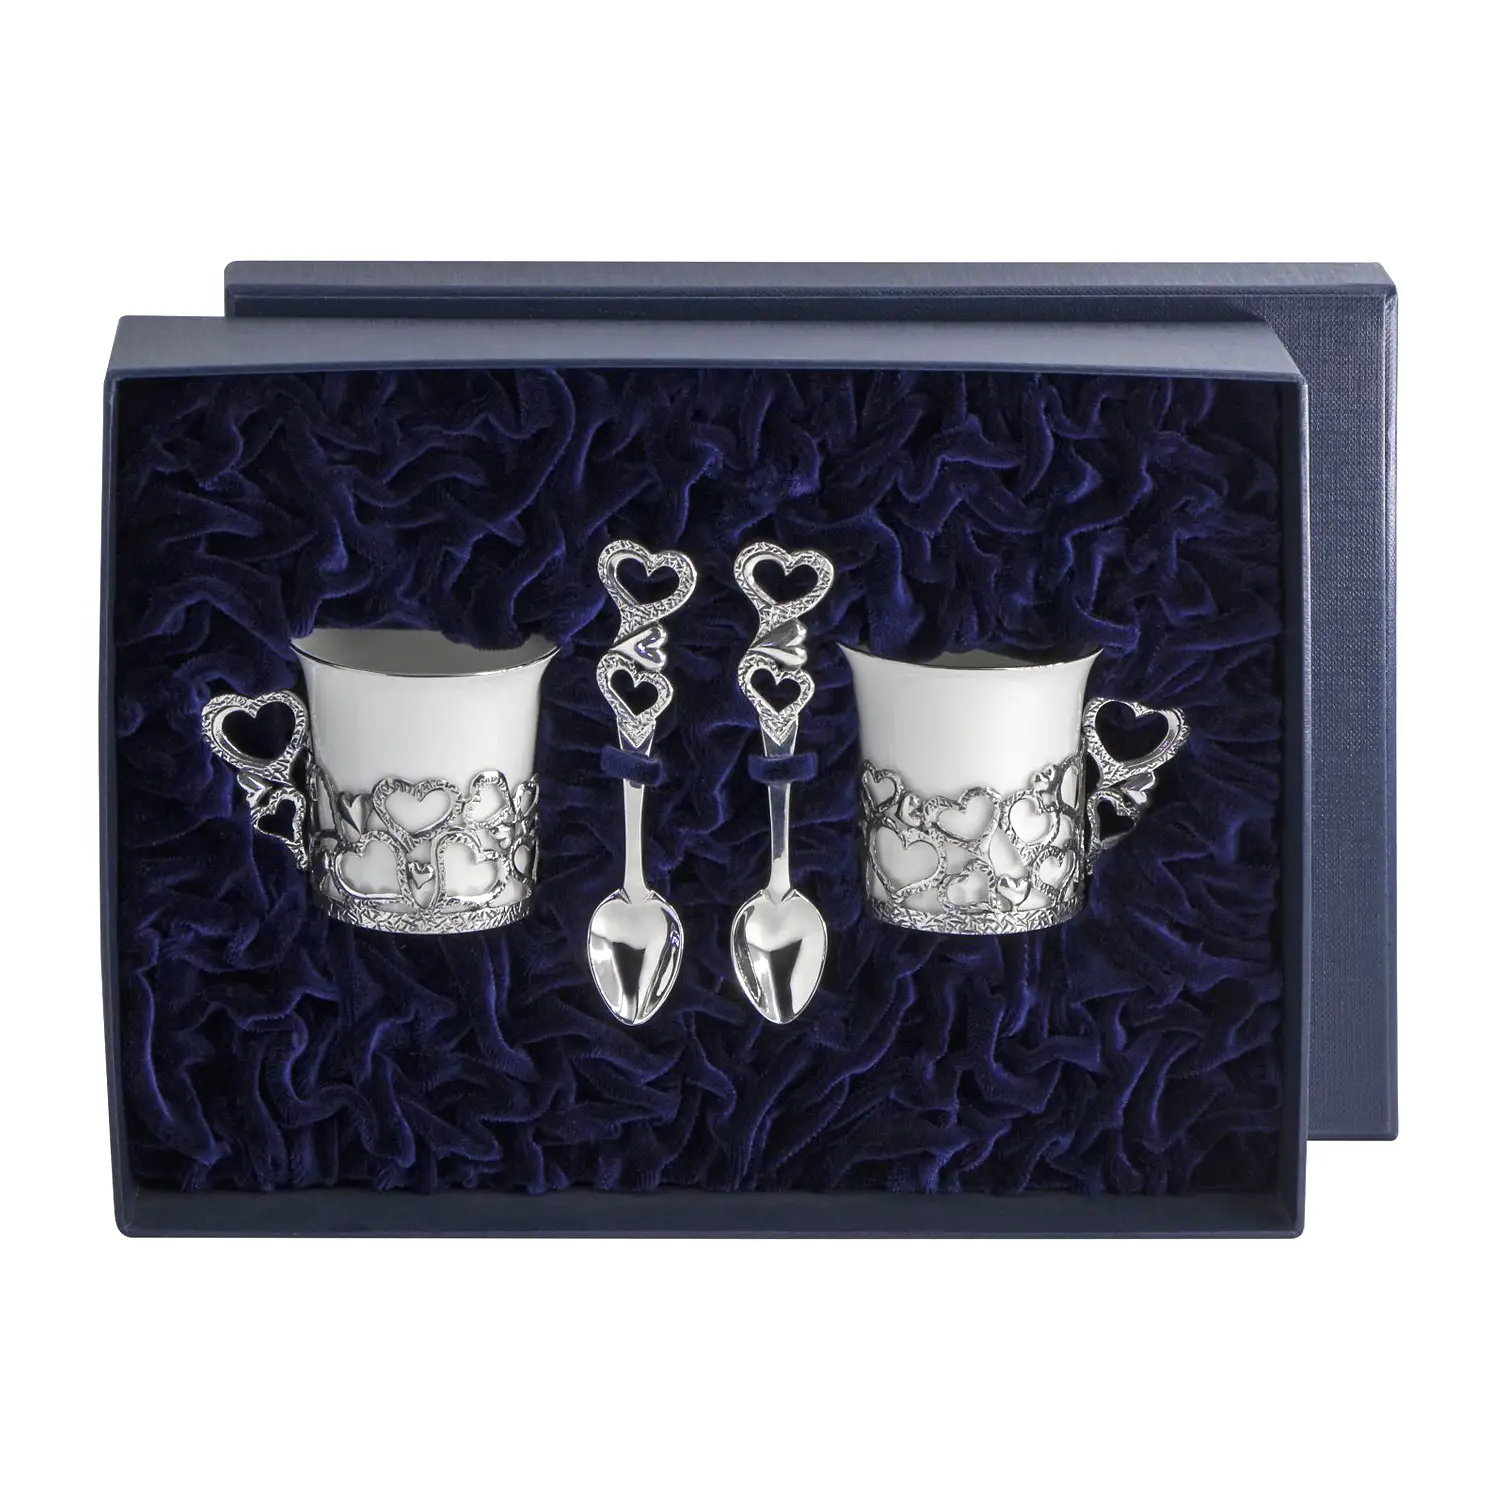 Набор кофейных чашек Сердечко: ложка, чашка (Серебро 925) набор кофейных чашек богема ложка чашка на 6 персон серебро 925